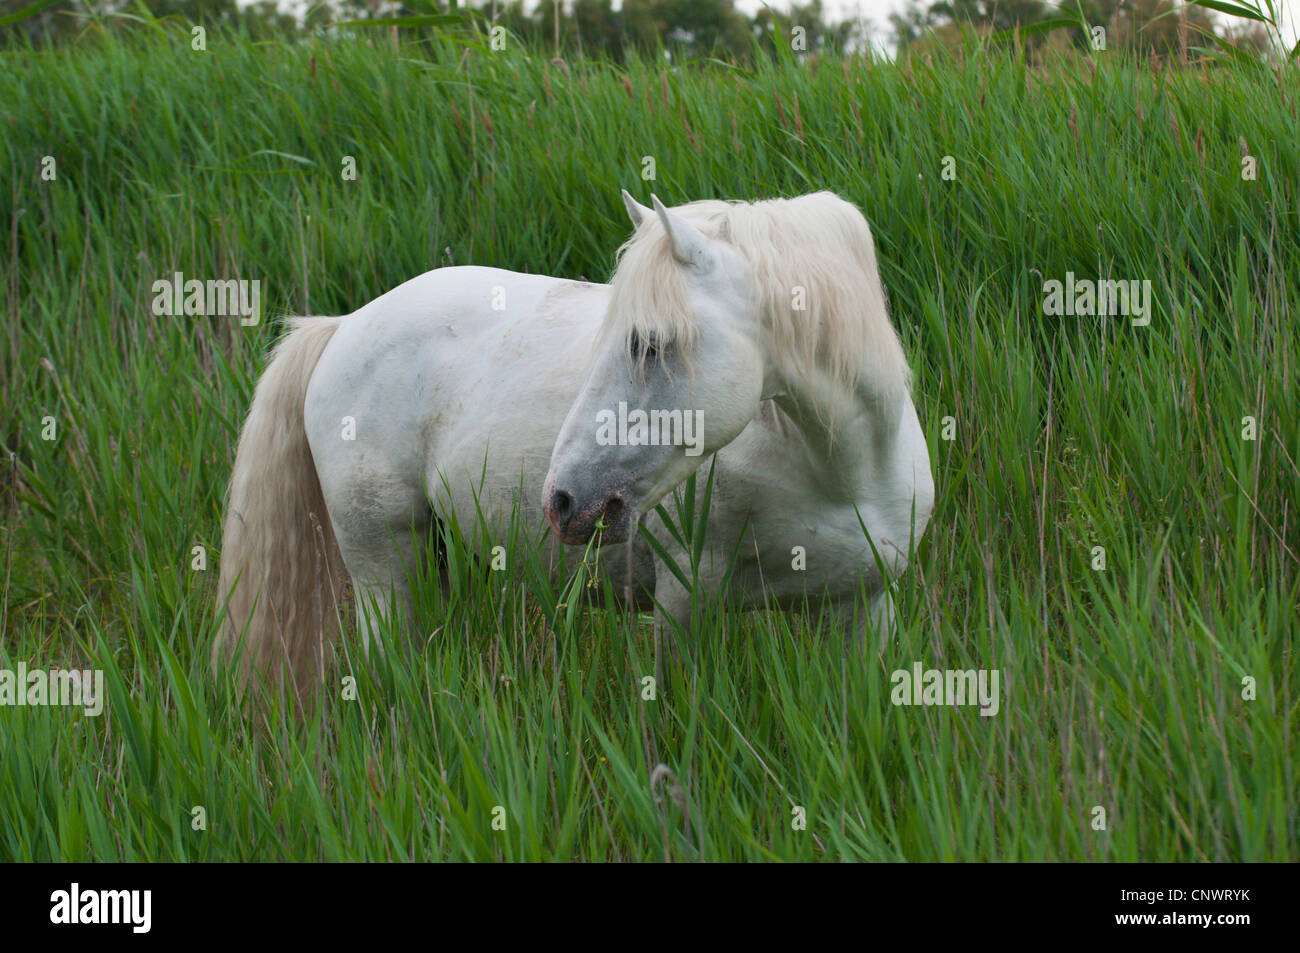 Cheval de Camargue (Equus caballus przewalskii. f), comité permanent, l'alimentation reed, France, Camargue Banque D'Images